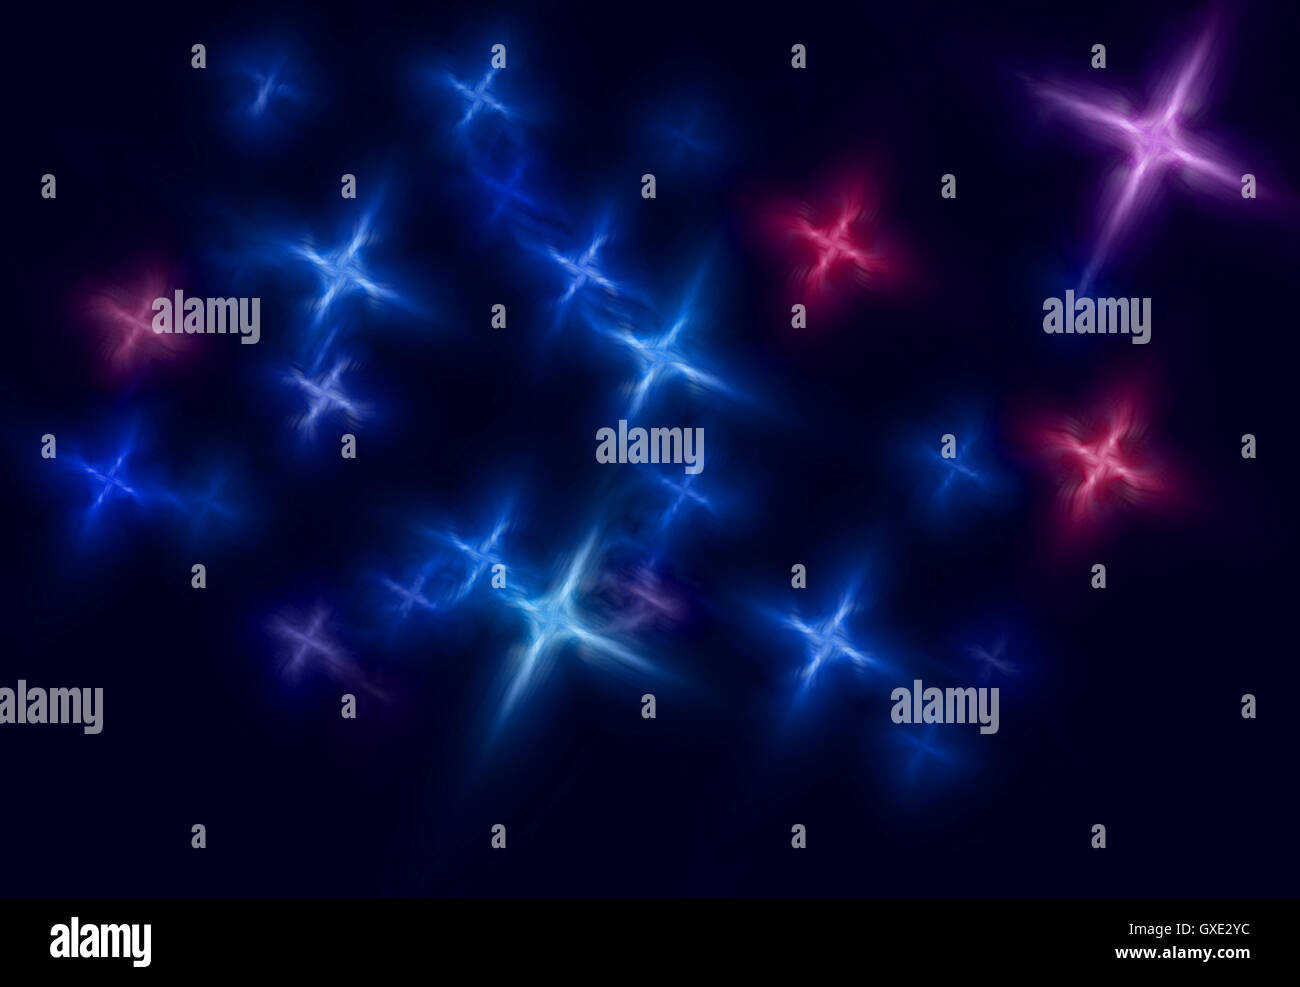 L'espace abstrait toile étoilée illustration composée d'étoiles bleues et rouges stylisées qui forment un motif sur fond sombre. Banque D'Images